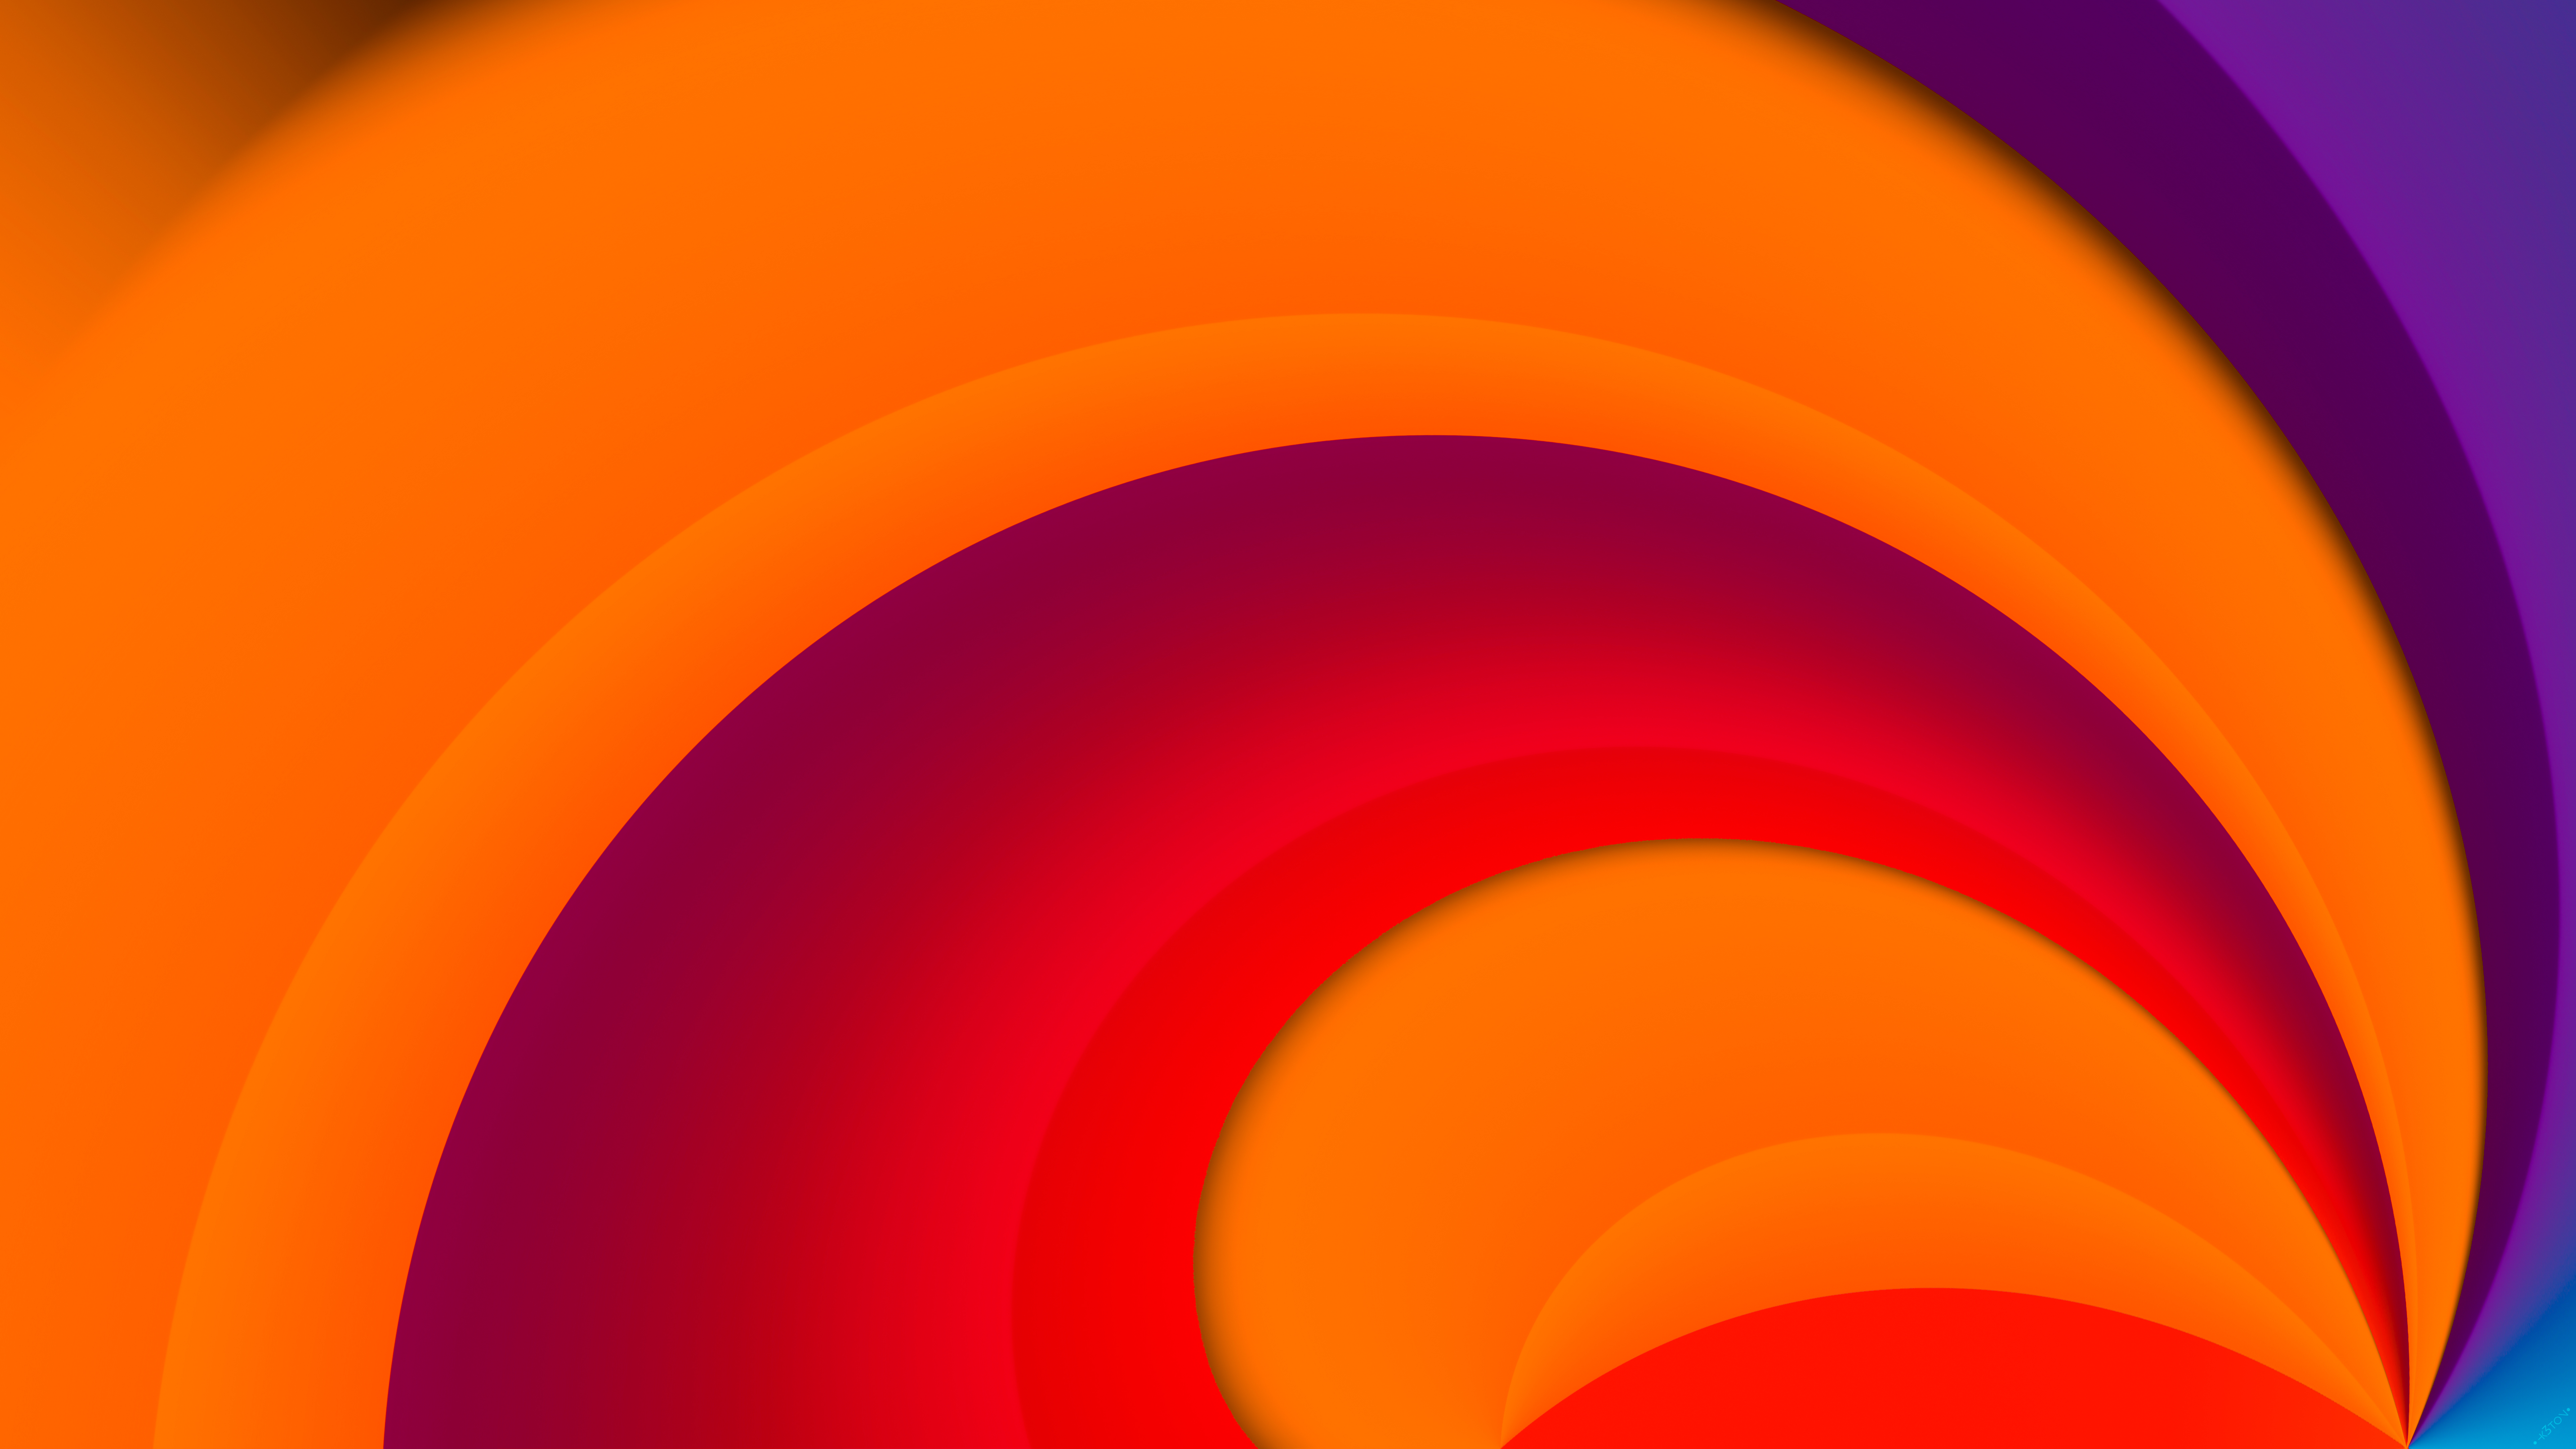 Hình nền trừu tượng Bright Orange 8k sẽ khiến không gian làm việc hoặc giải trí của bạn trở nên sống động và độc đáo hơn bao giờ hết. Đặc biệt, chúng tôi còn cung cấp các mẫu hình nền HD và 4k đầy ấn tượng, phù hợp với mọi sở thích của người dùng.